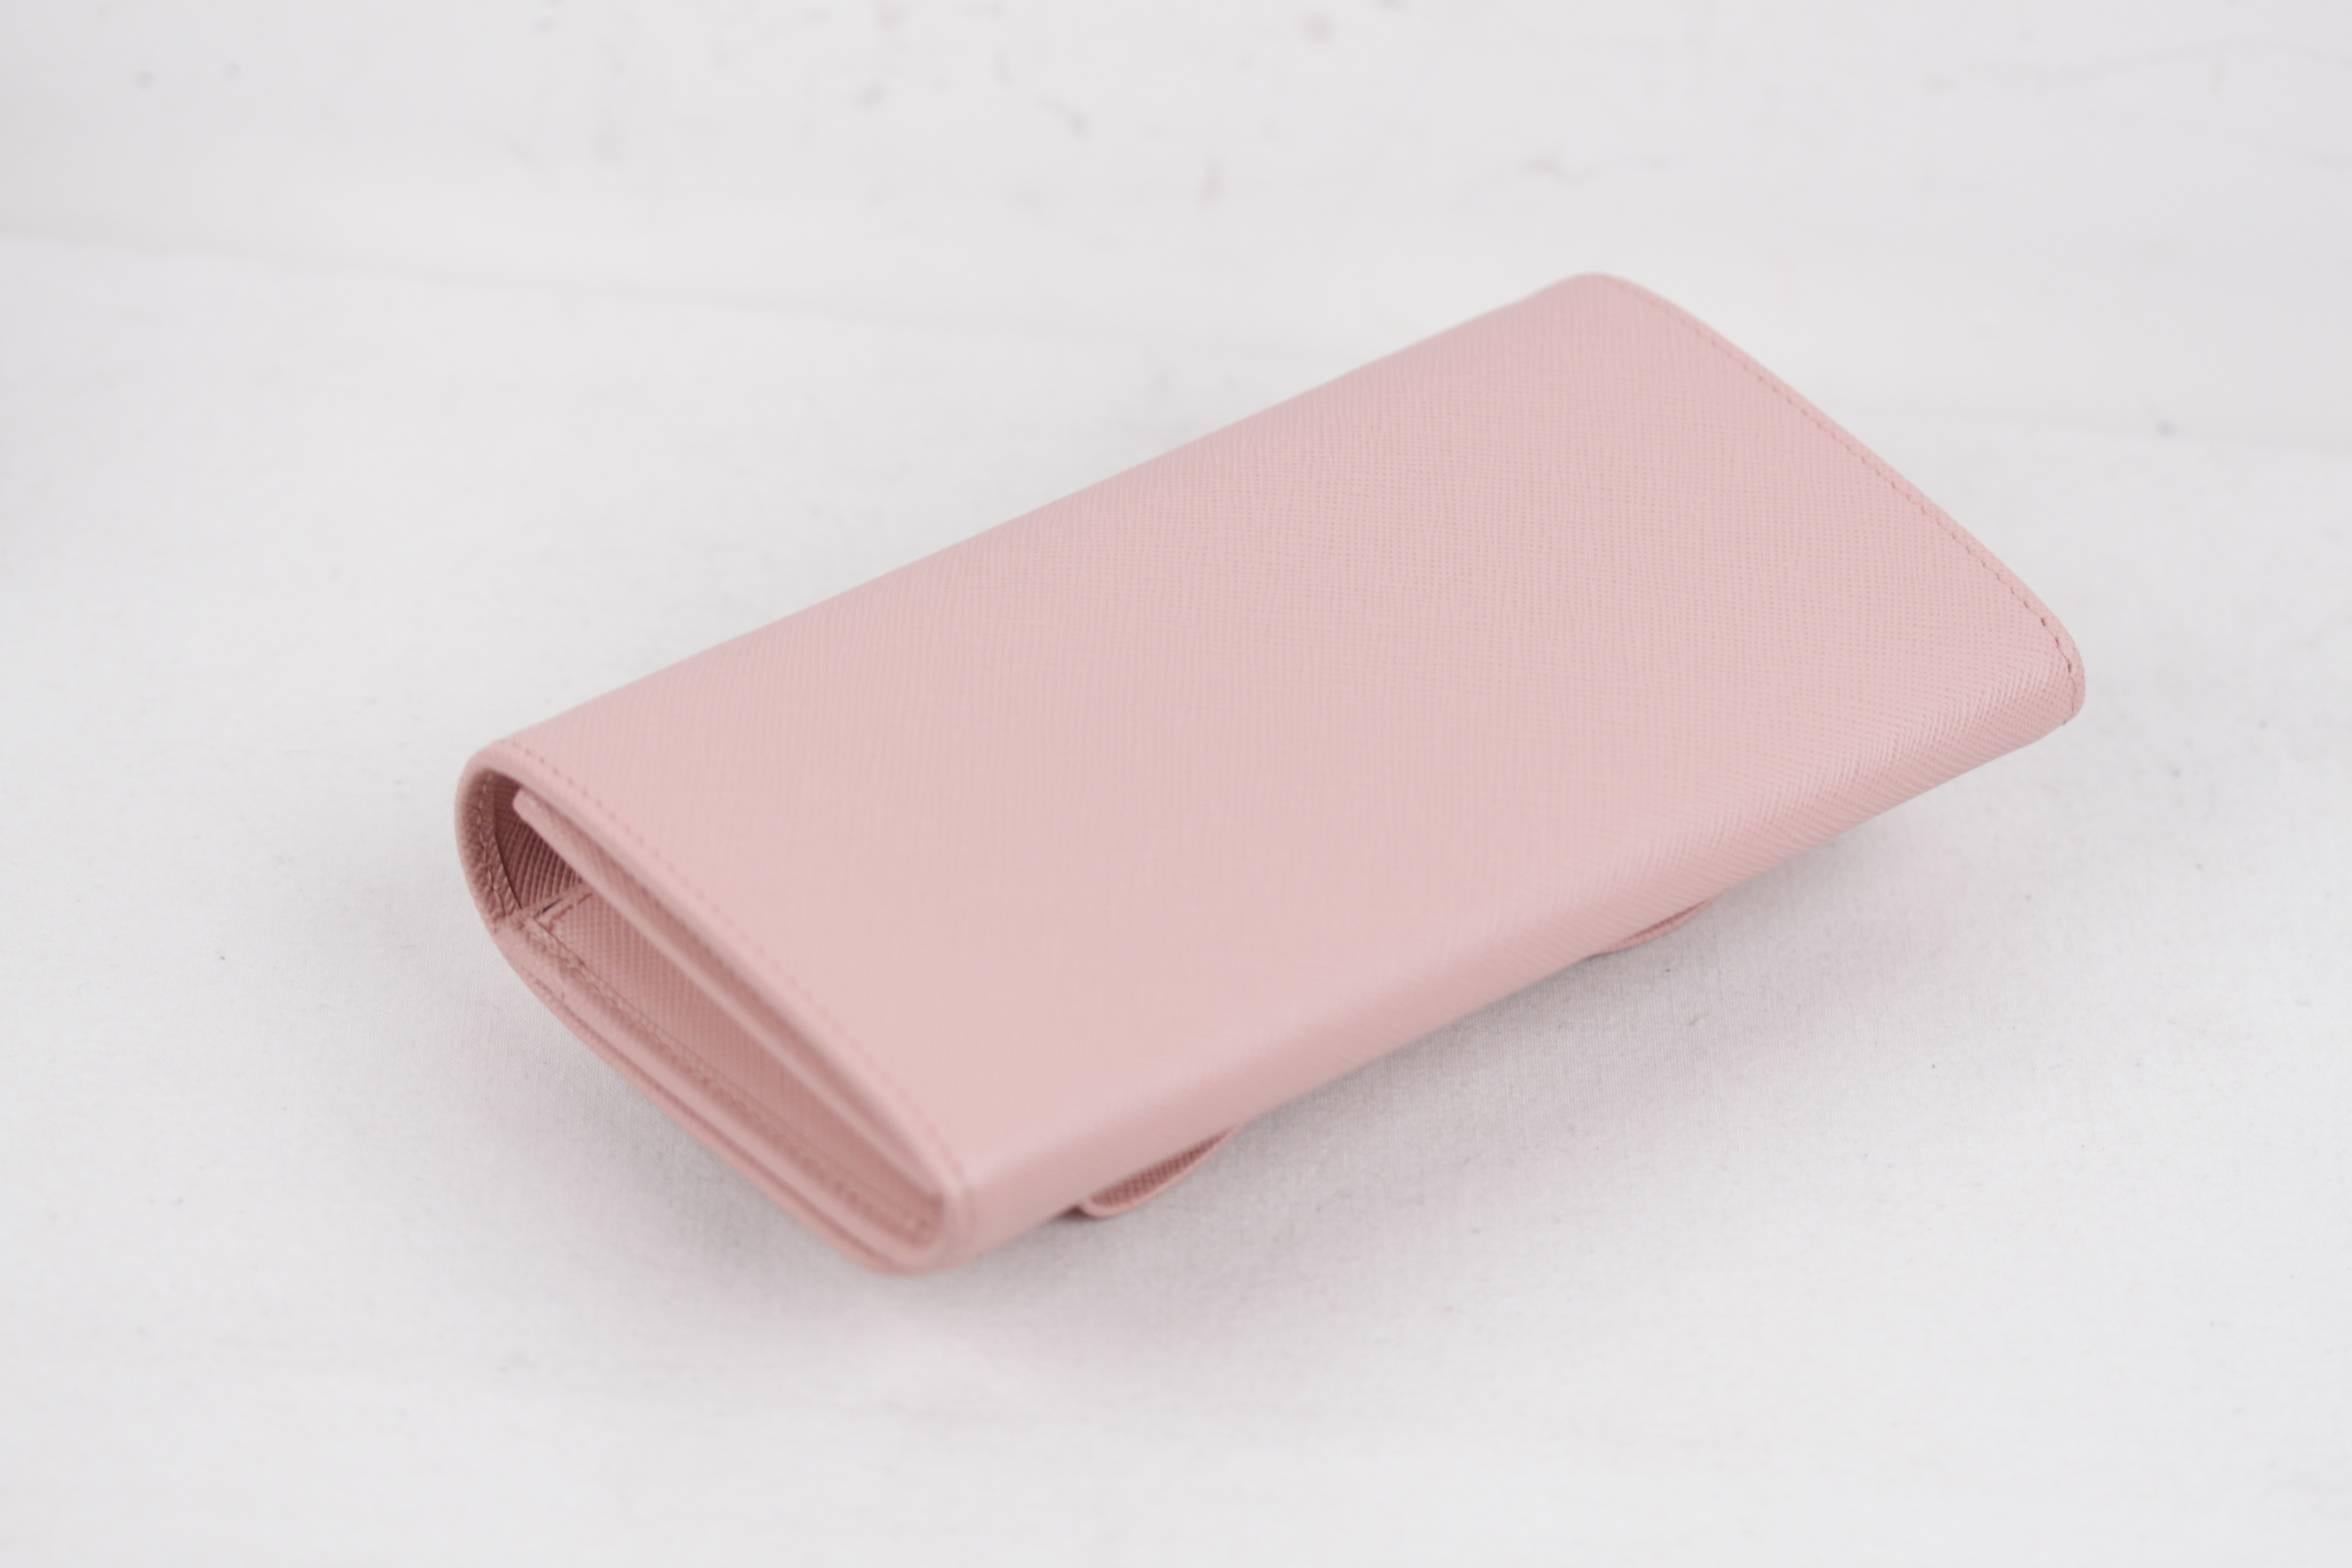 prada pink wallet